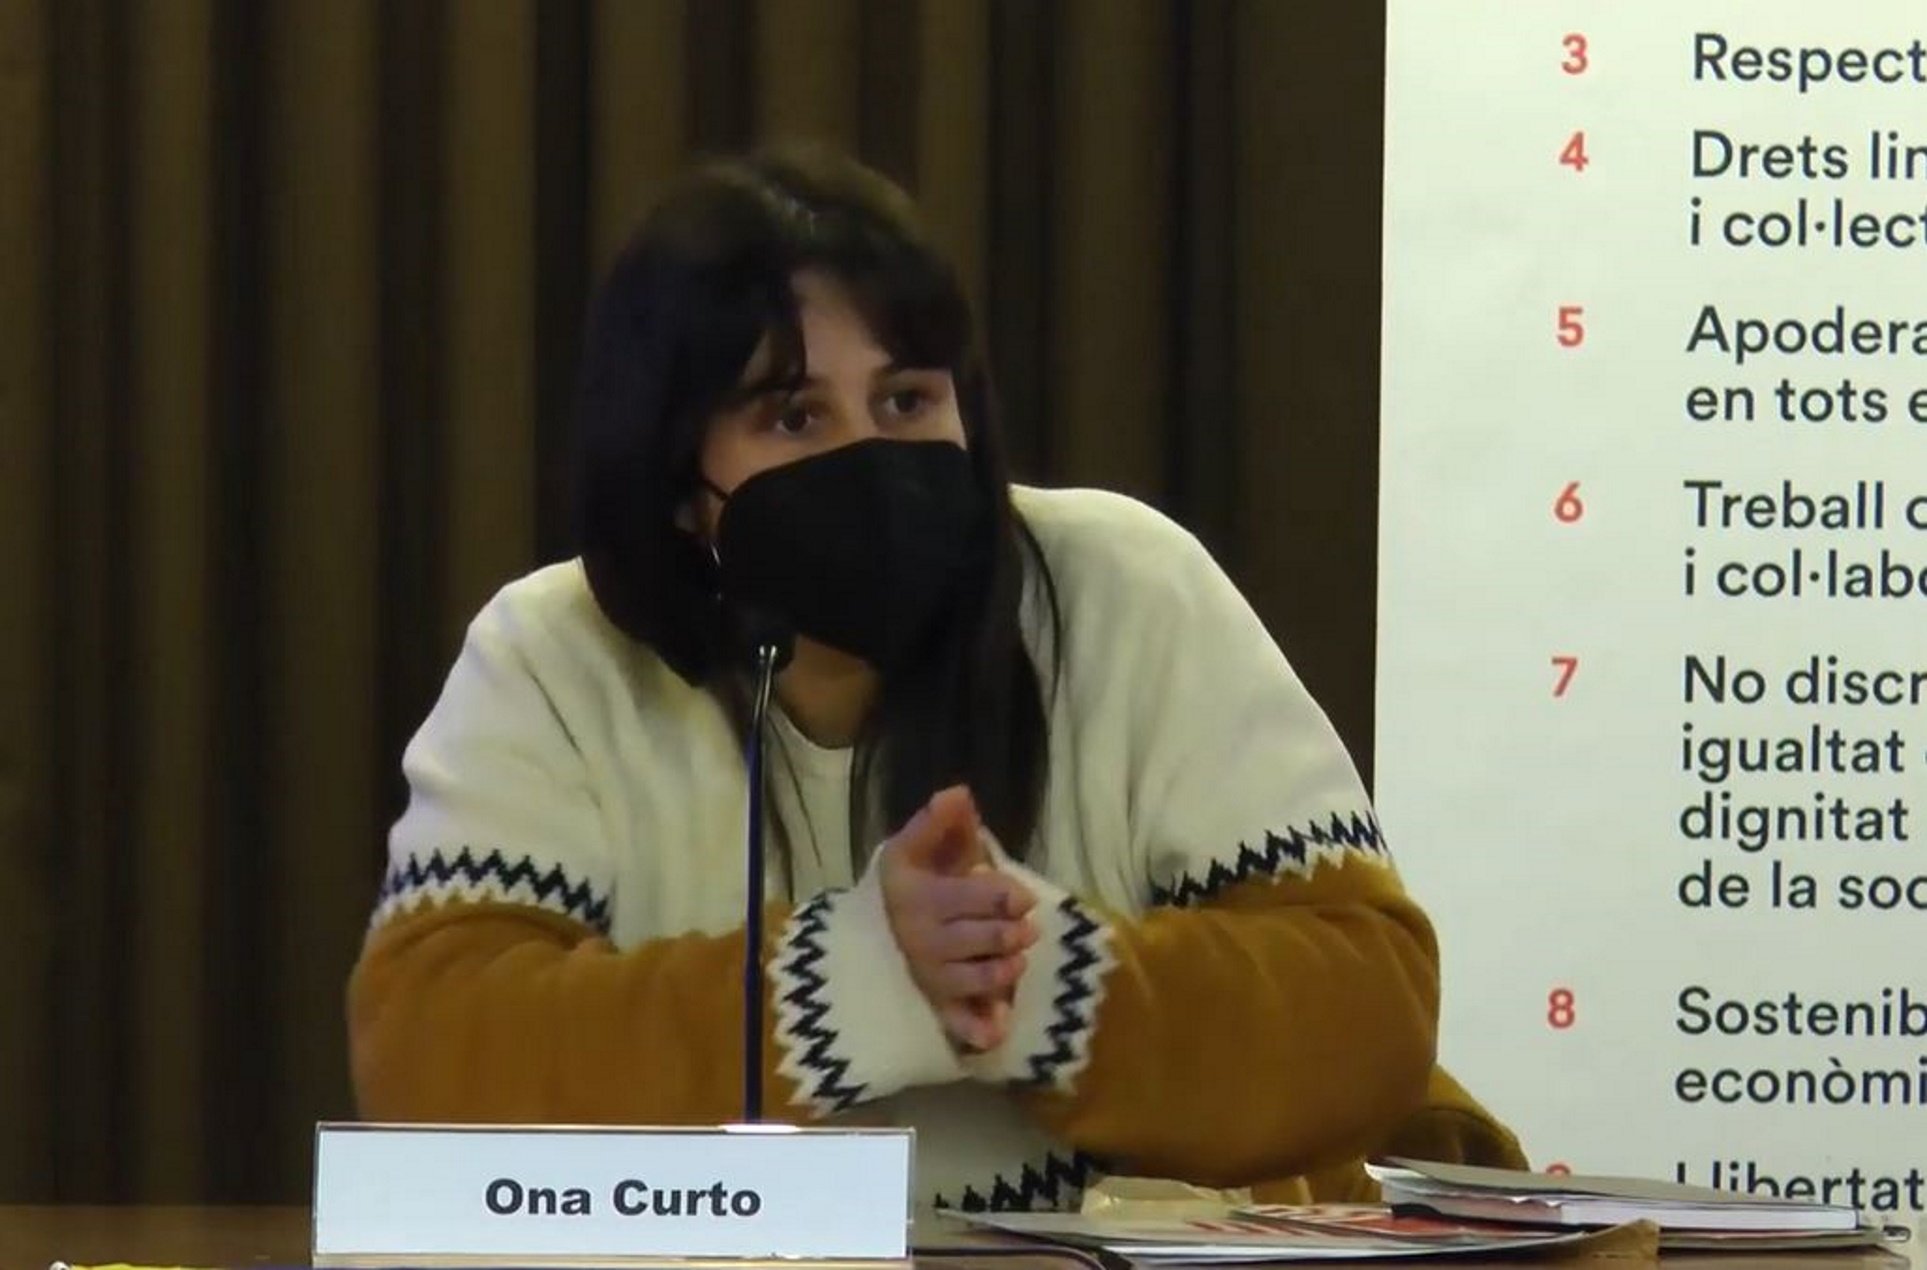 Ona Curto y Villarejo: "Eso pasa de castaño oscuro. ¿Qué más tenemos que aguantar?"